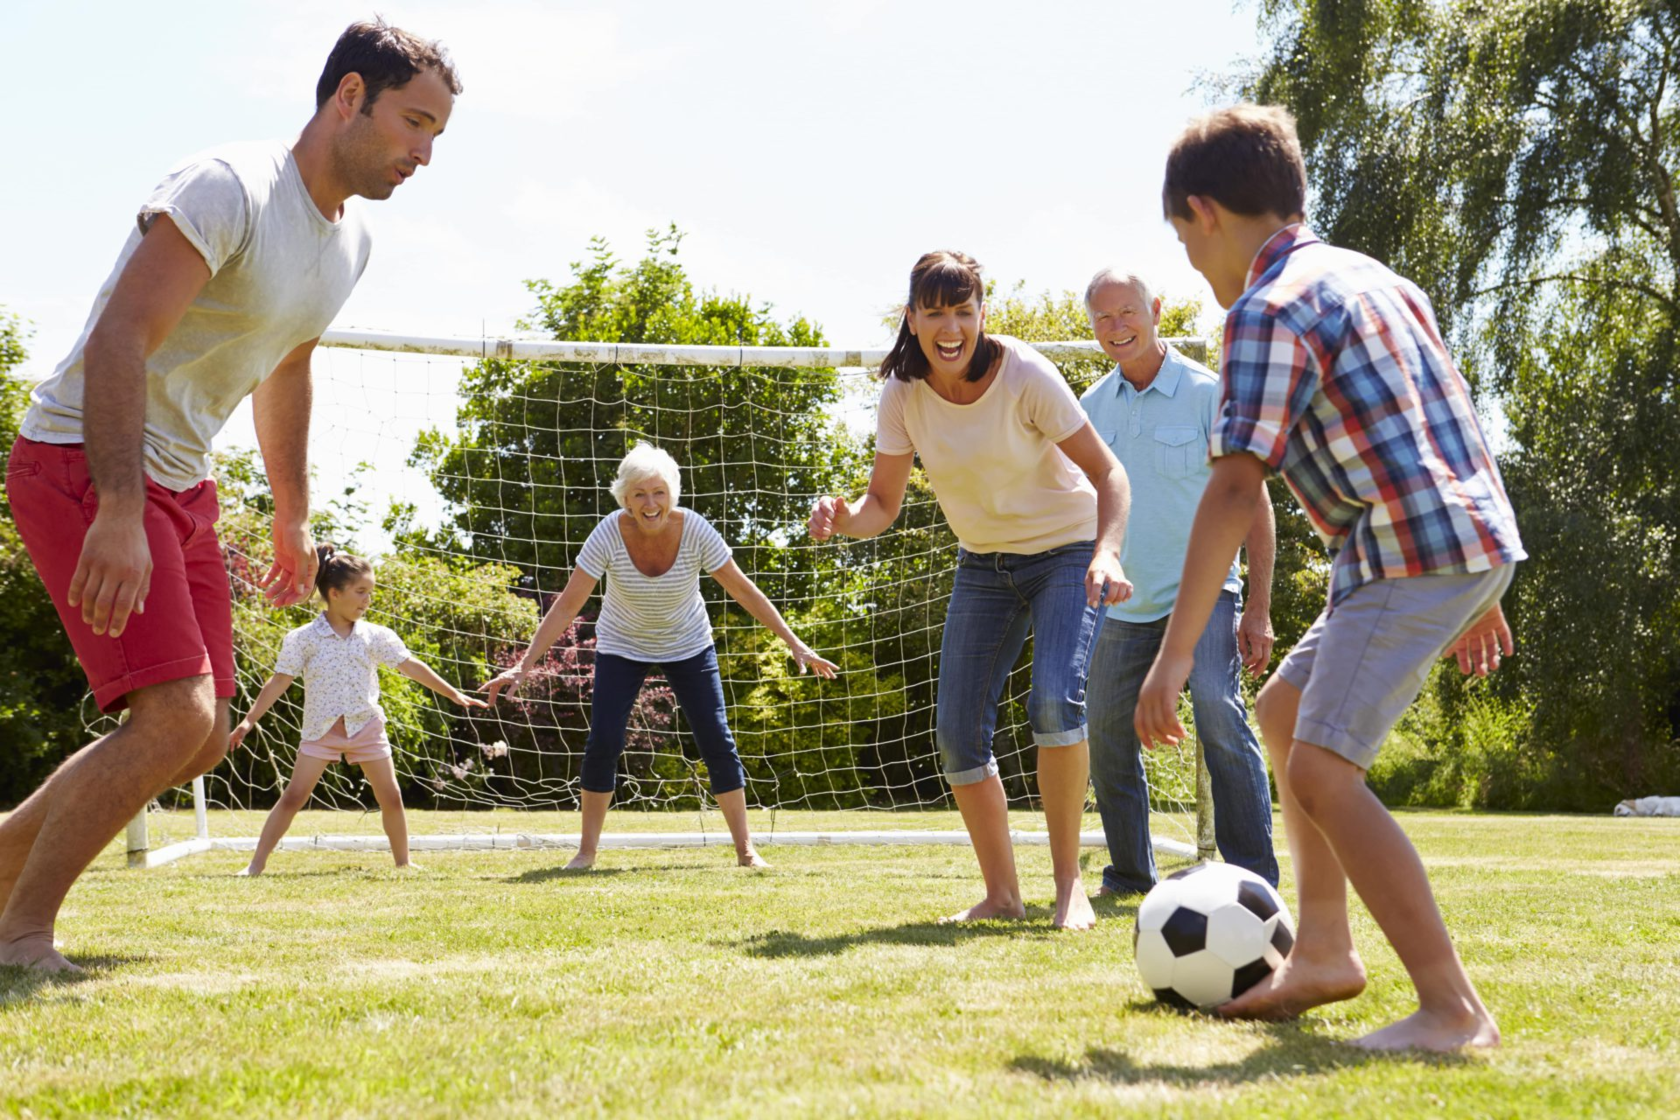 Sport can play with. Спортивные и подвижные игры. Спортивная семья. Активные игры для детей. Сеьм язанмиается спортом.